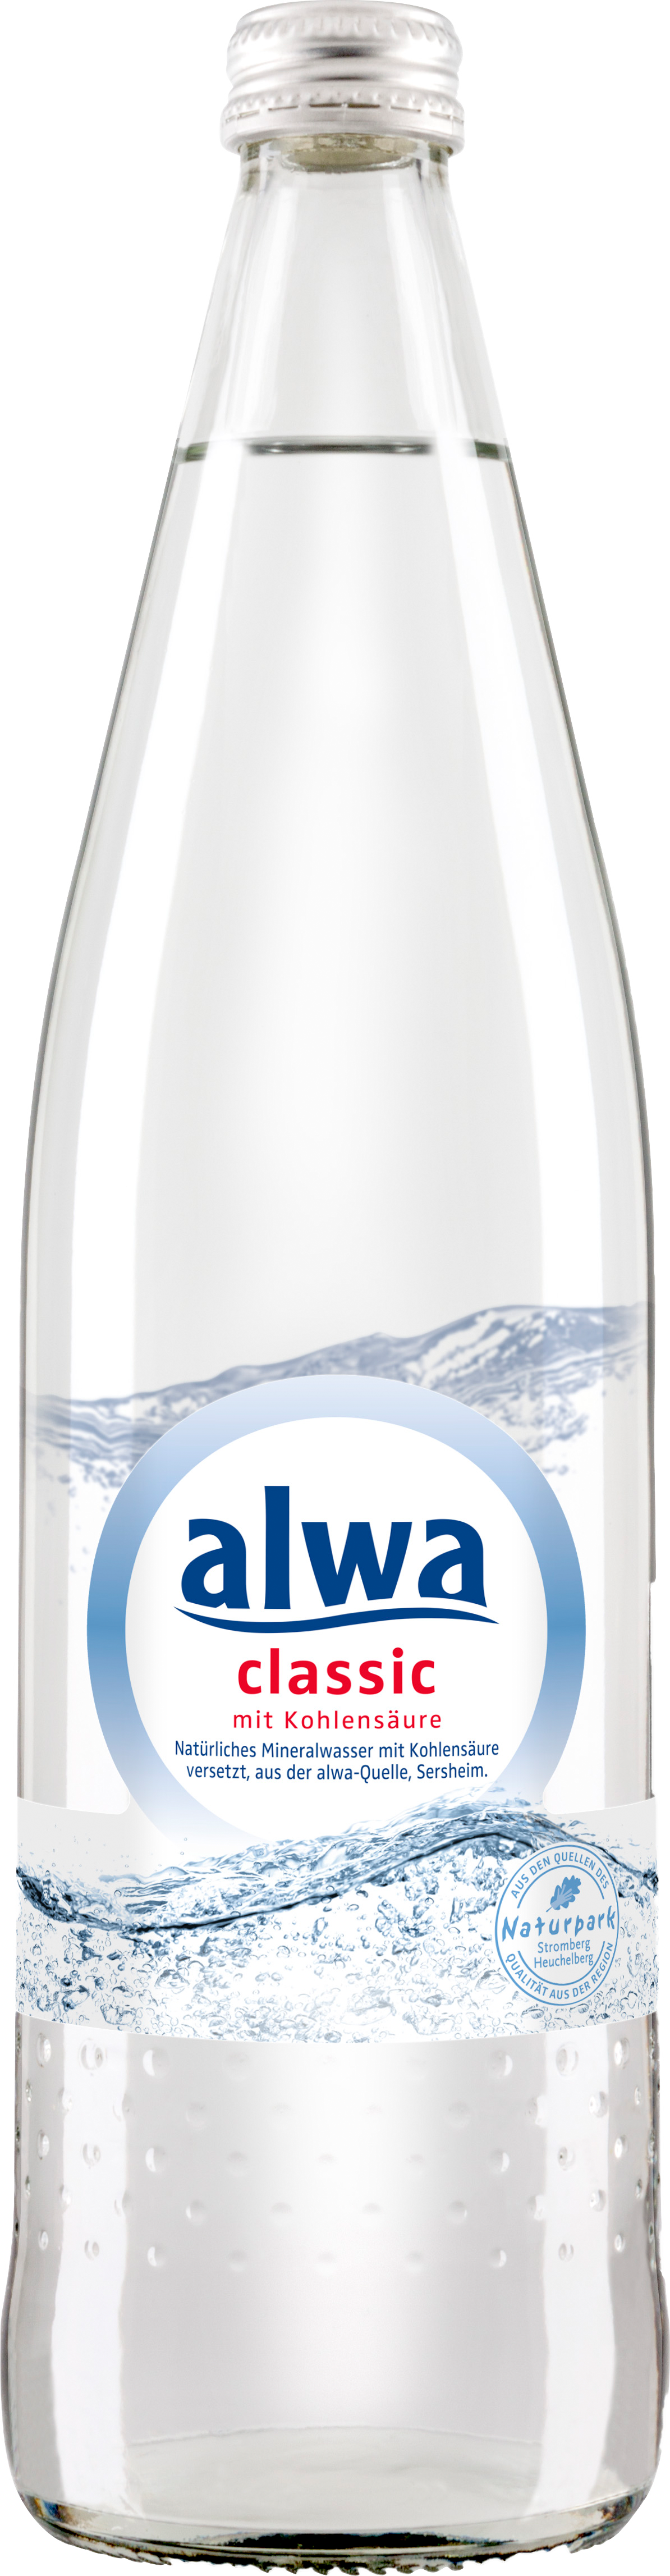 alwa-classic-maruhn-welt-der-getr-nke